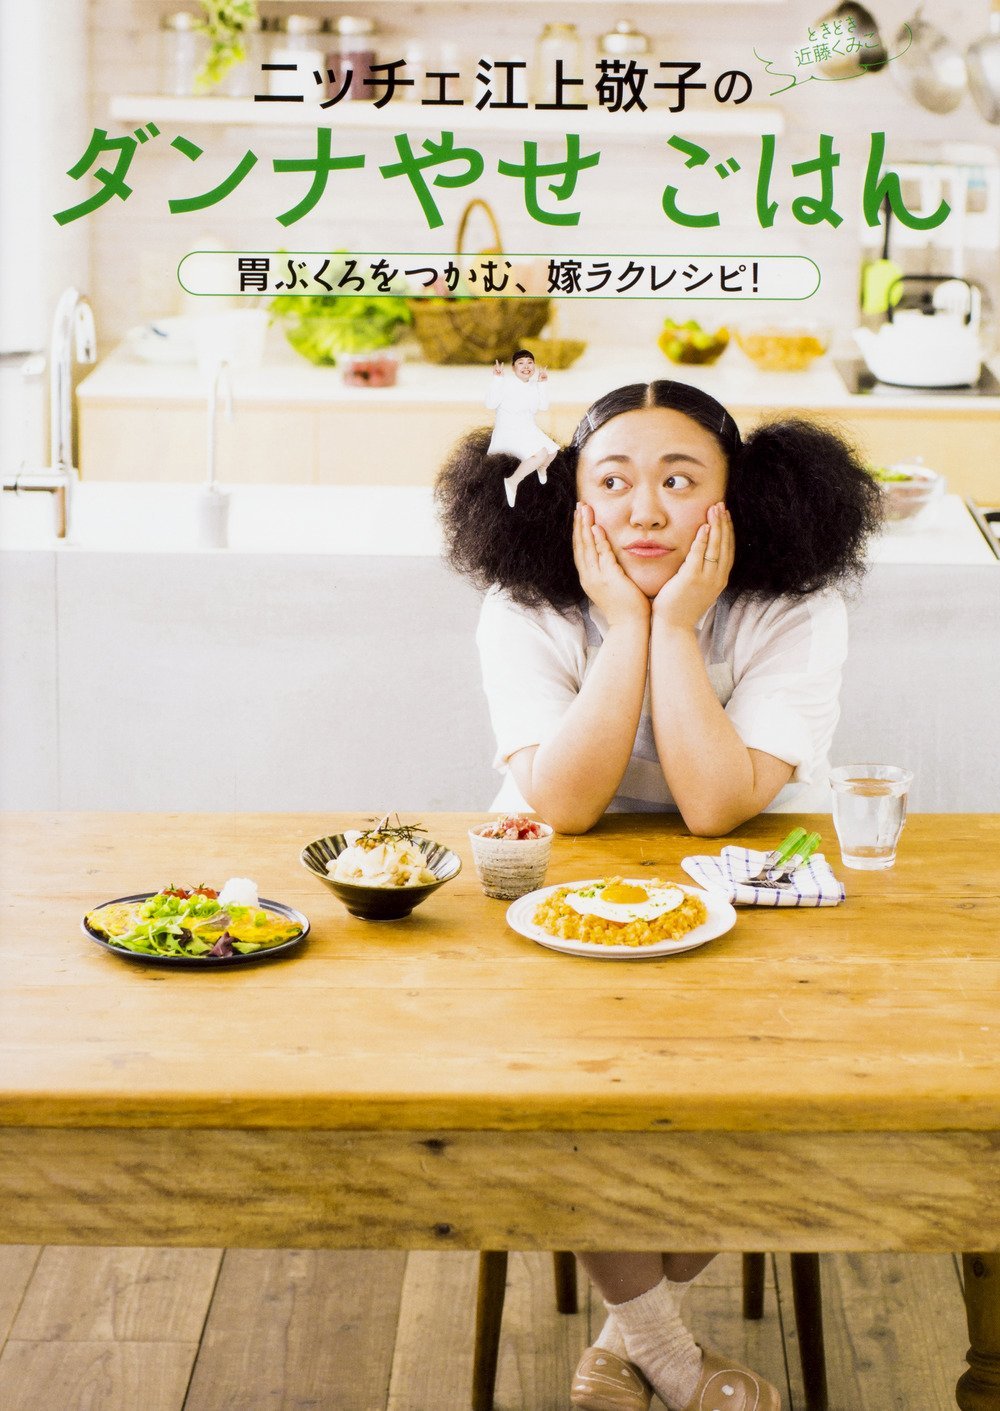 ニッチェ 江上敬子のダンナやせごはん 胃ぶくろをつかむ、嫁ラクレシピ！